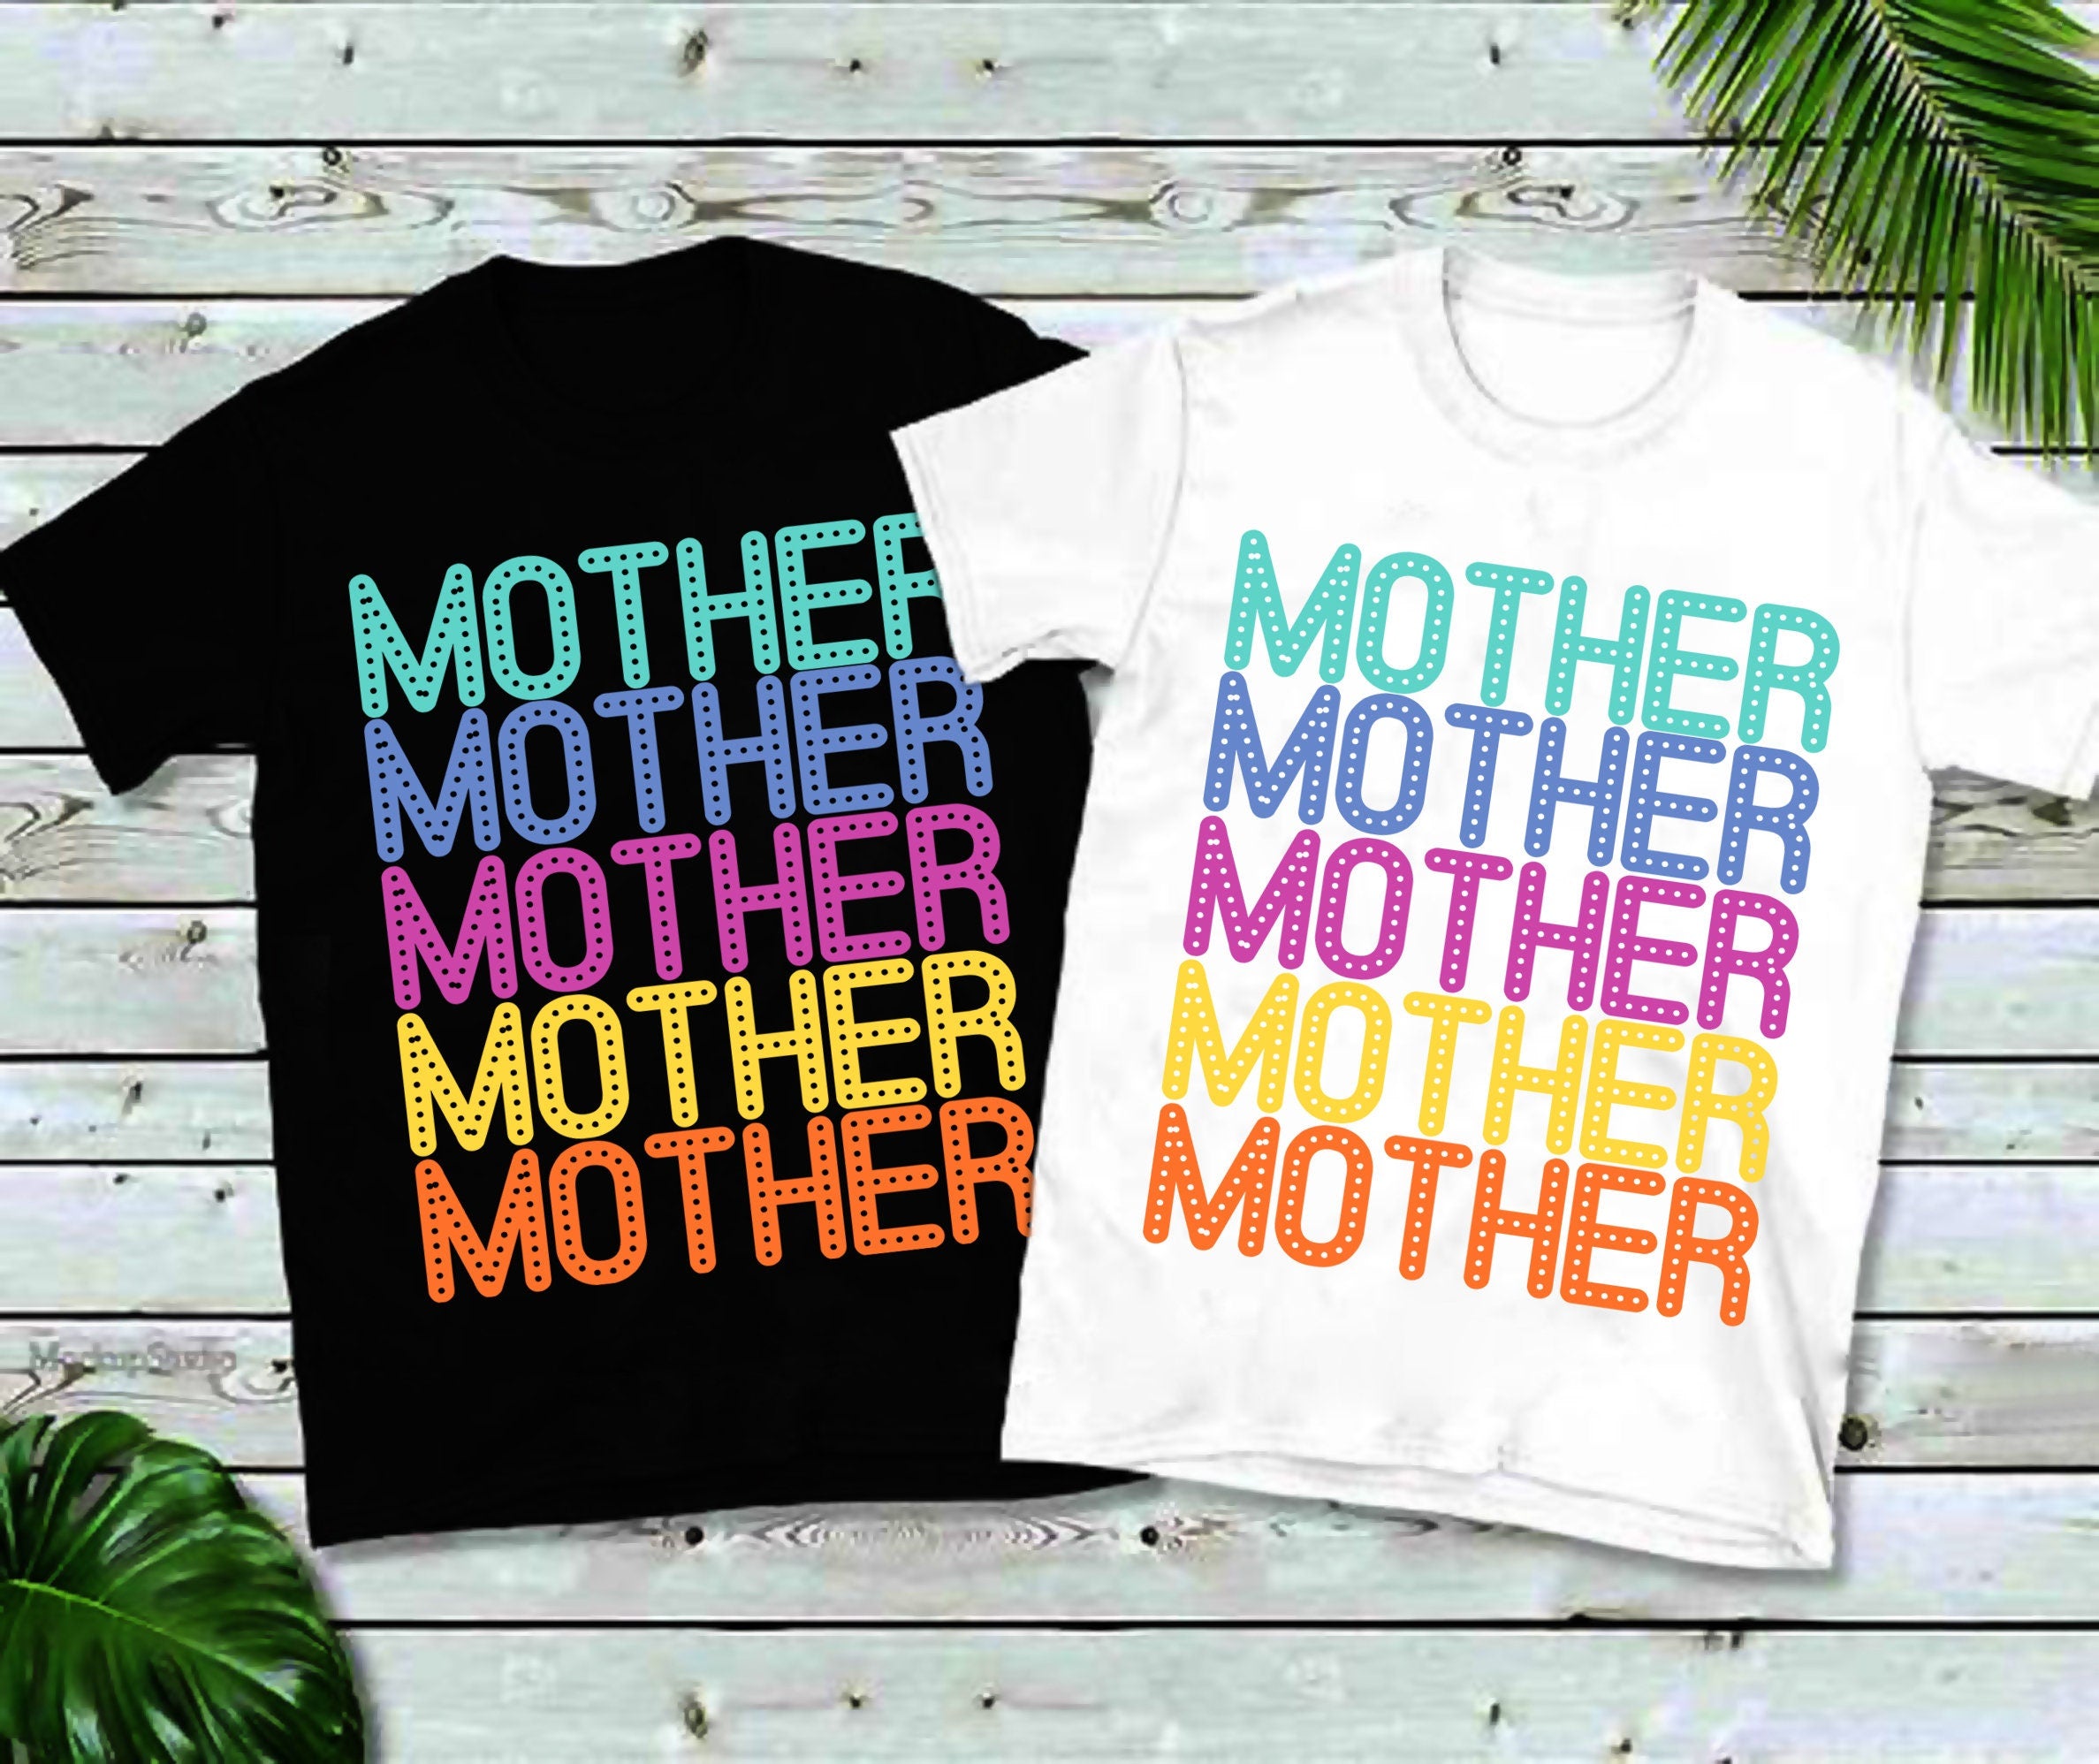 Mother マルチカラー T シャツ、母の日ギフト、母の日シャツ、お母さんへのギフト、お母さんの誕生日プレゼント - plusminusco.com